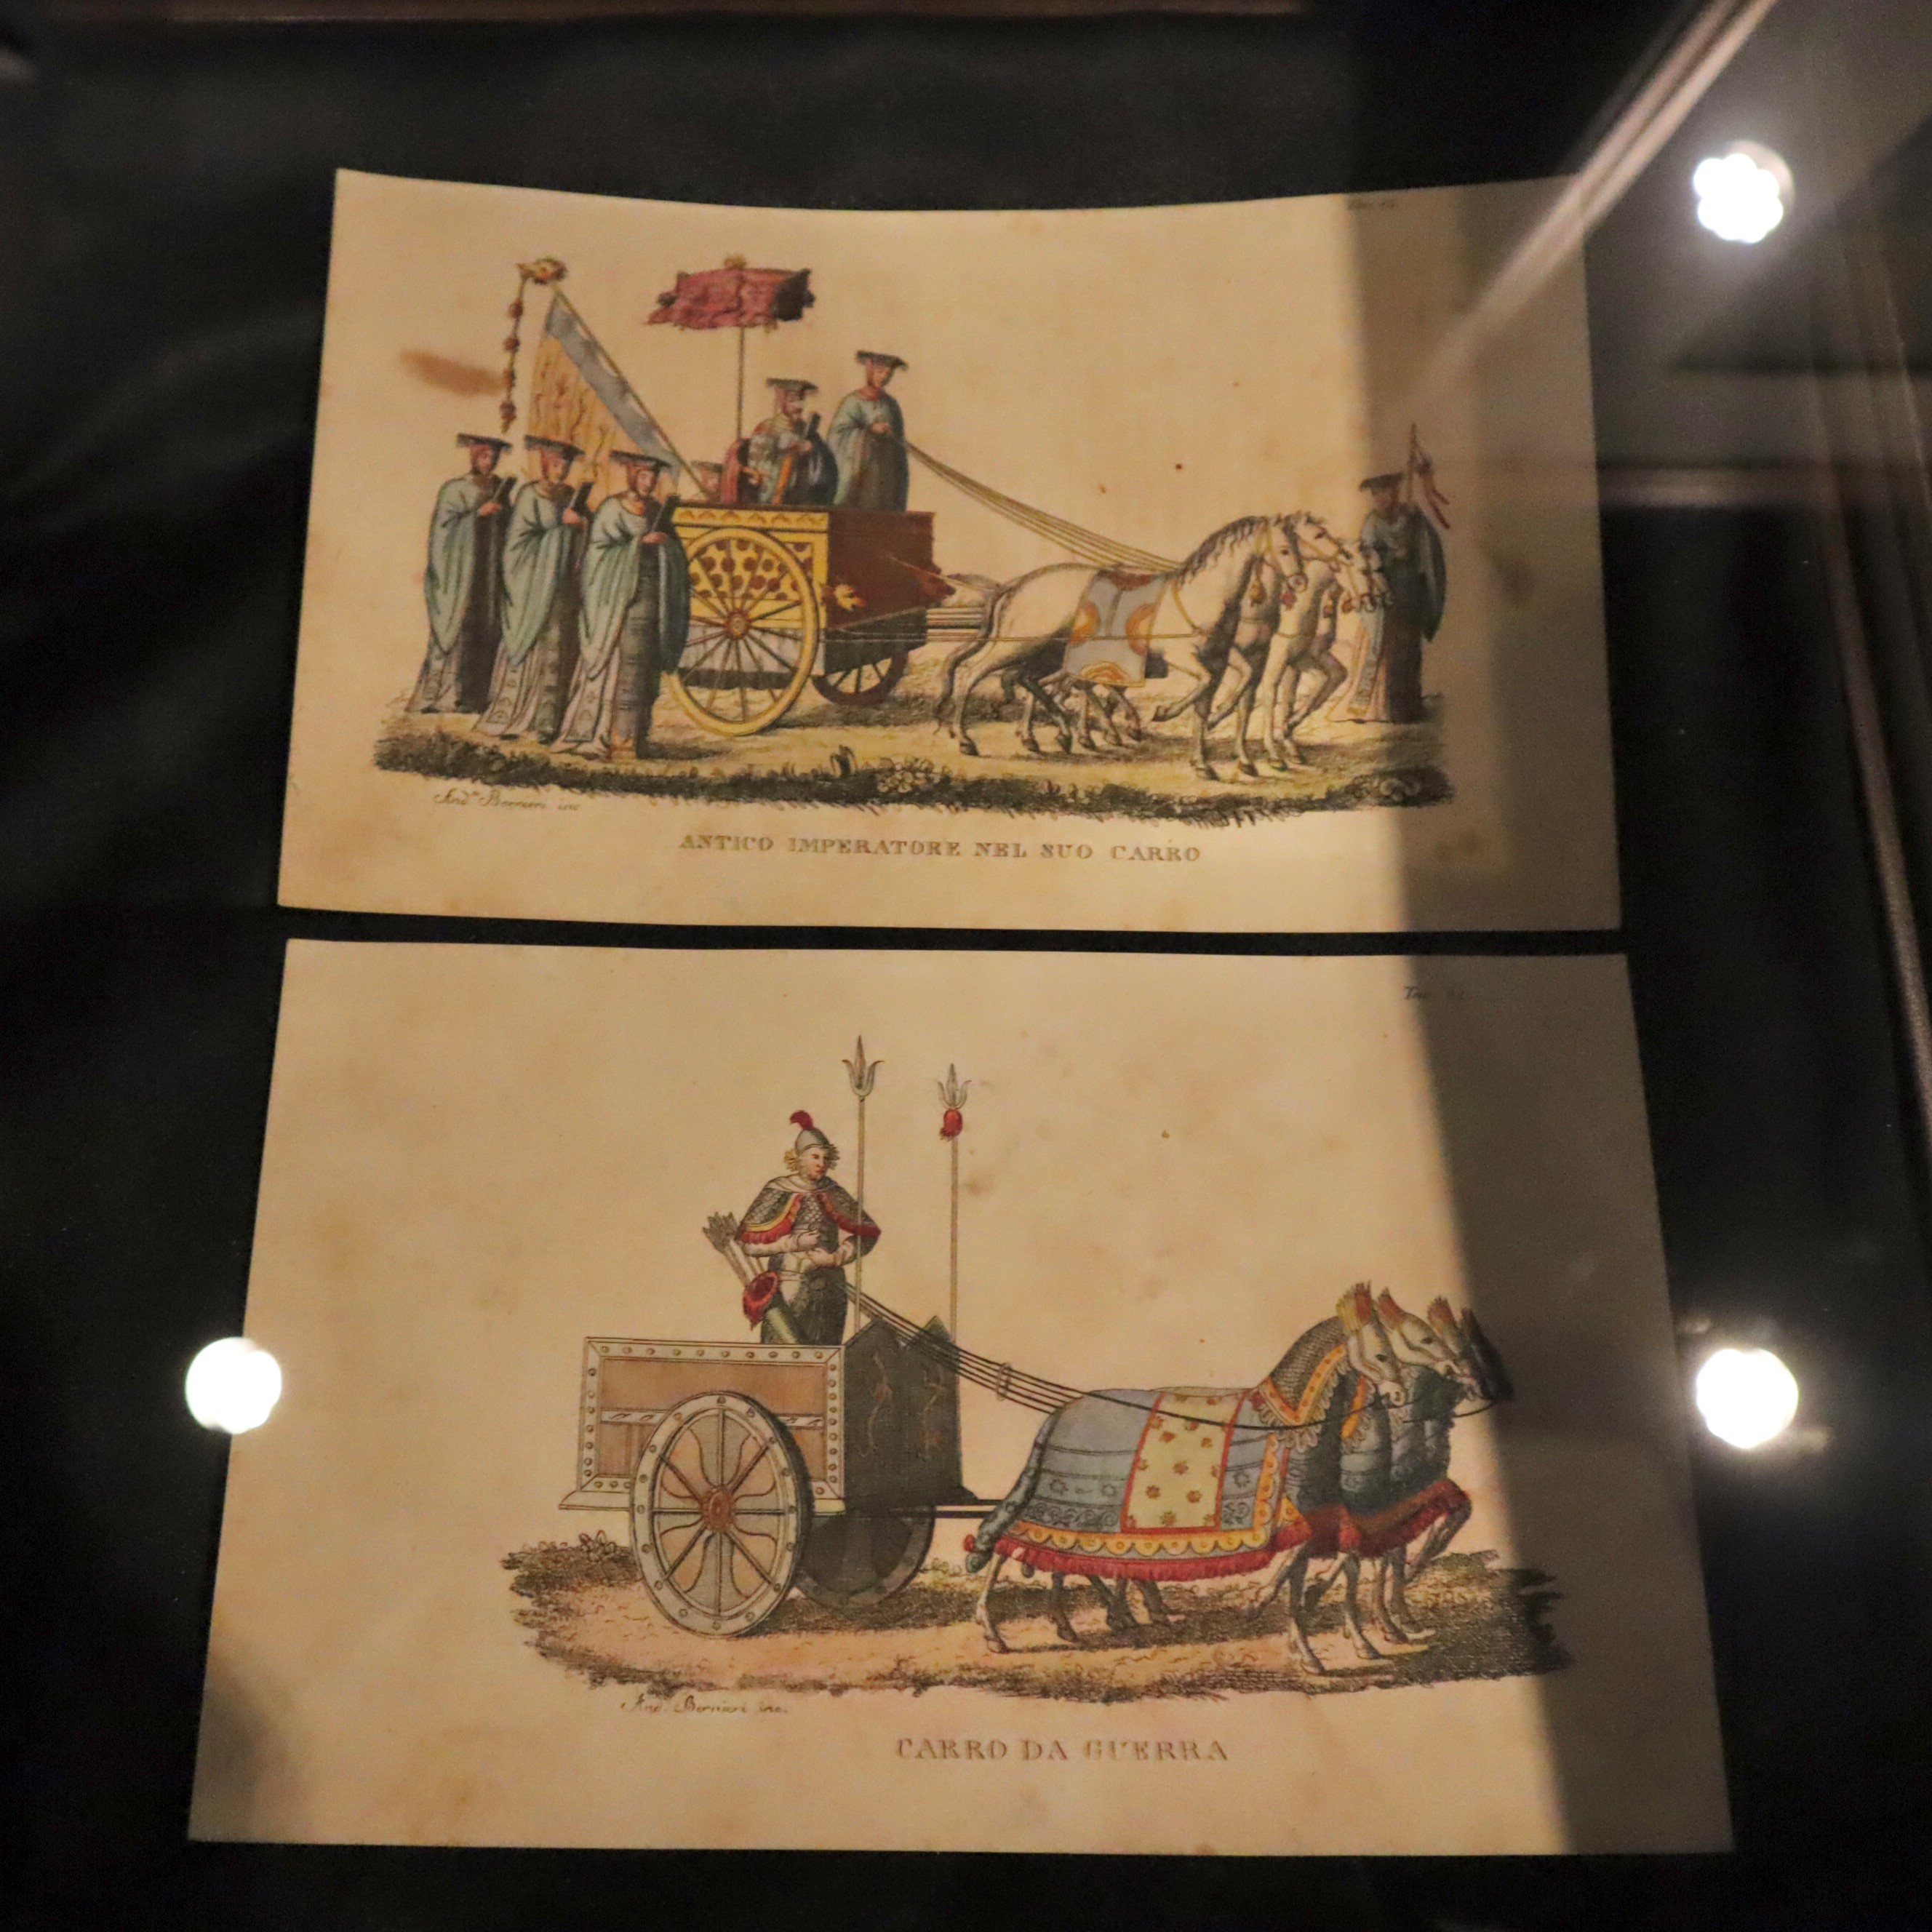 アンダ・ベルニエリ『中国の風景と風俗』（1820年刊）。開催中の企画展「本から飛び出せ！のりものたち」展では、古代中国の戦車の図版も展示されている。上は「戦車に乗った古代の皇帝」、下は「戦車」と、それぞれイタリア語で記されている。